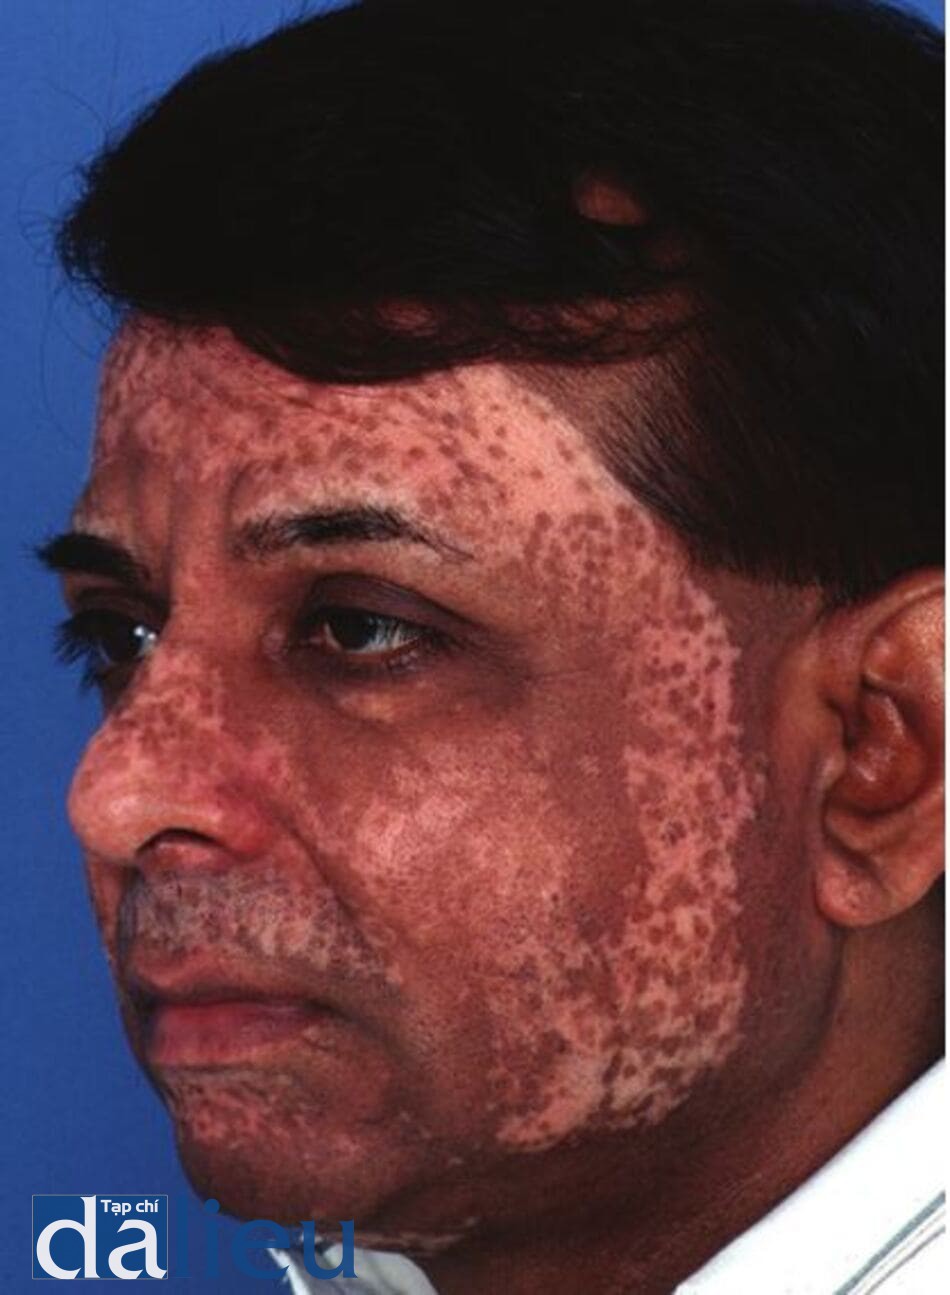 Hình 11.19 Một bệnh nhân có da phức tạp (của Ấn Độ) cho thấy sự mất sắc tố và tông màu không đông đều 1 năm sau tái tạo bề mặt bằng laser C02.